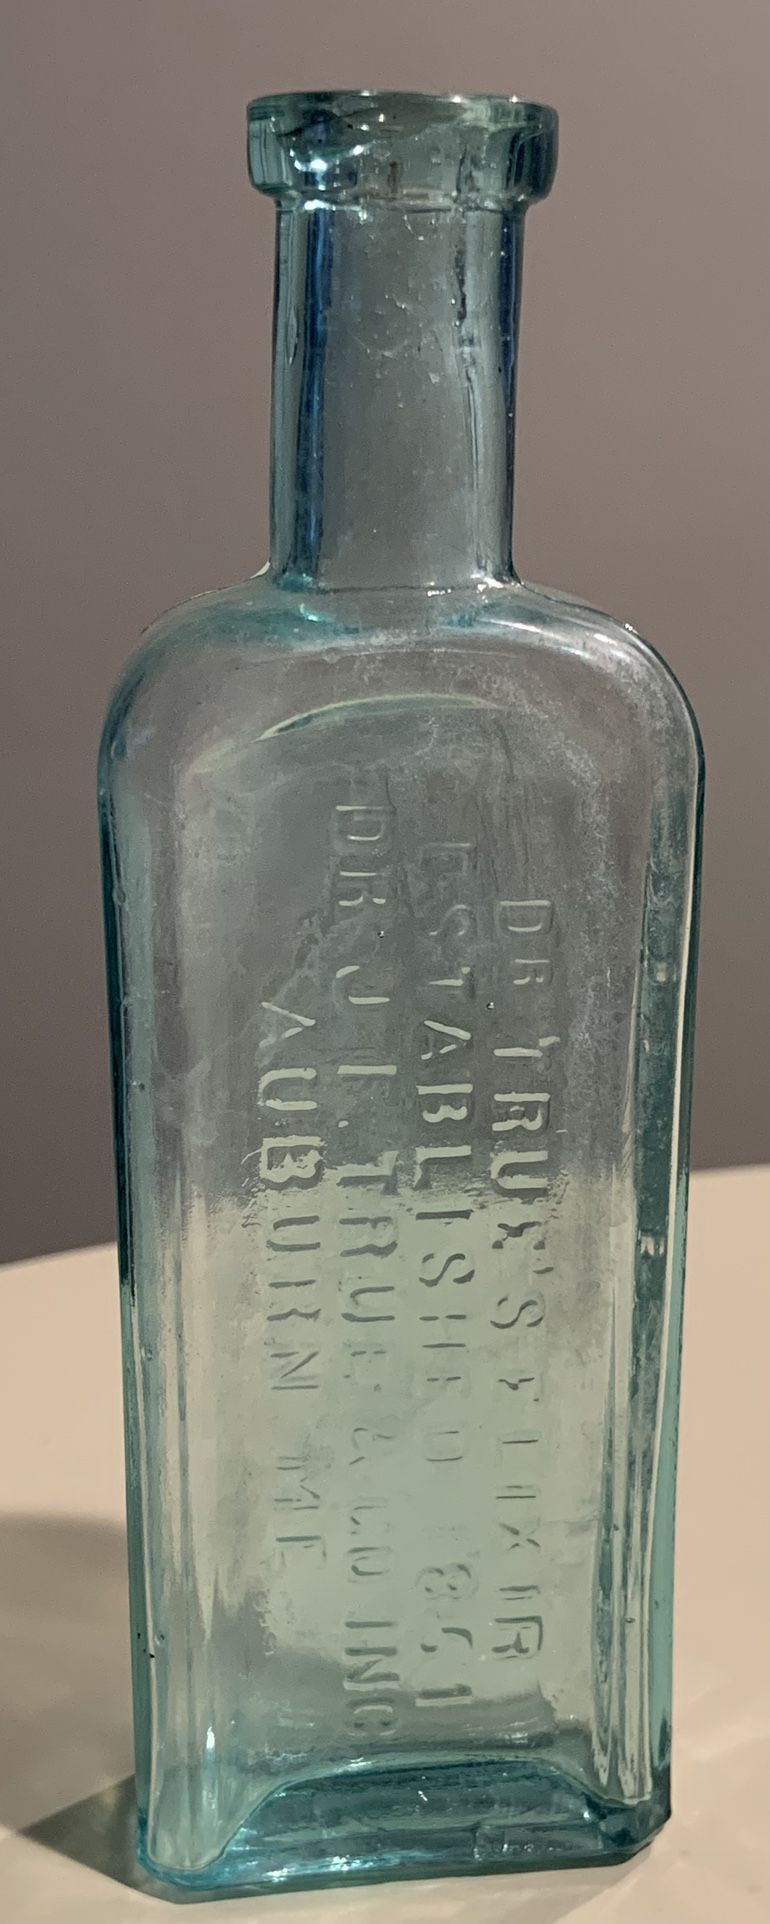 Dr.true’s Elixir  Antique Bottle